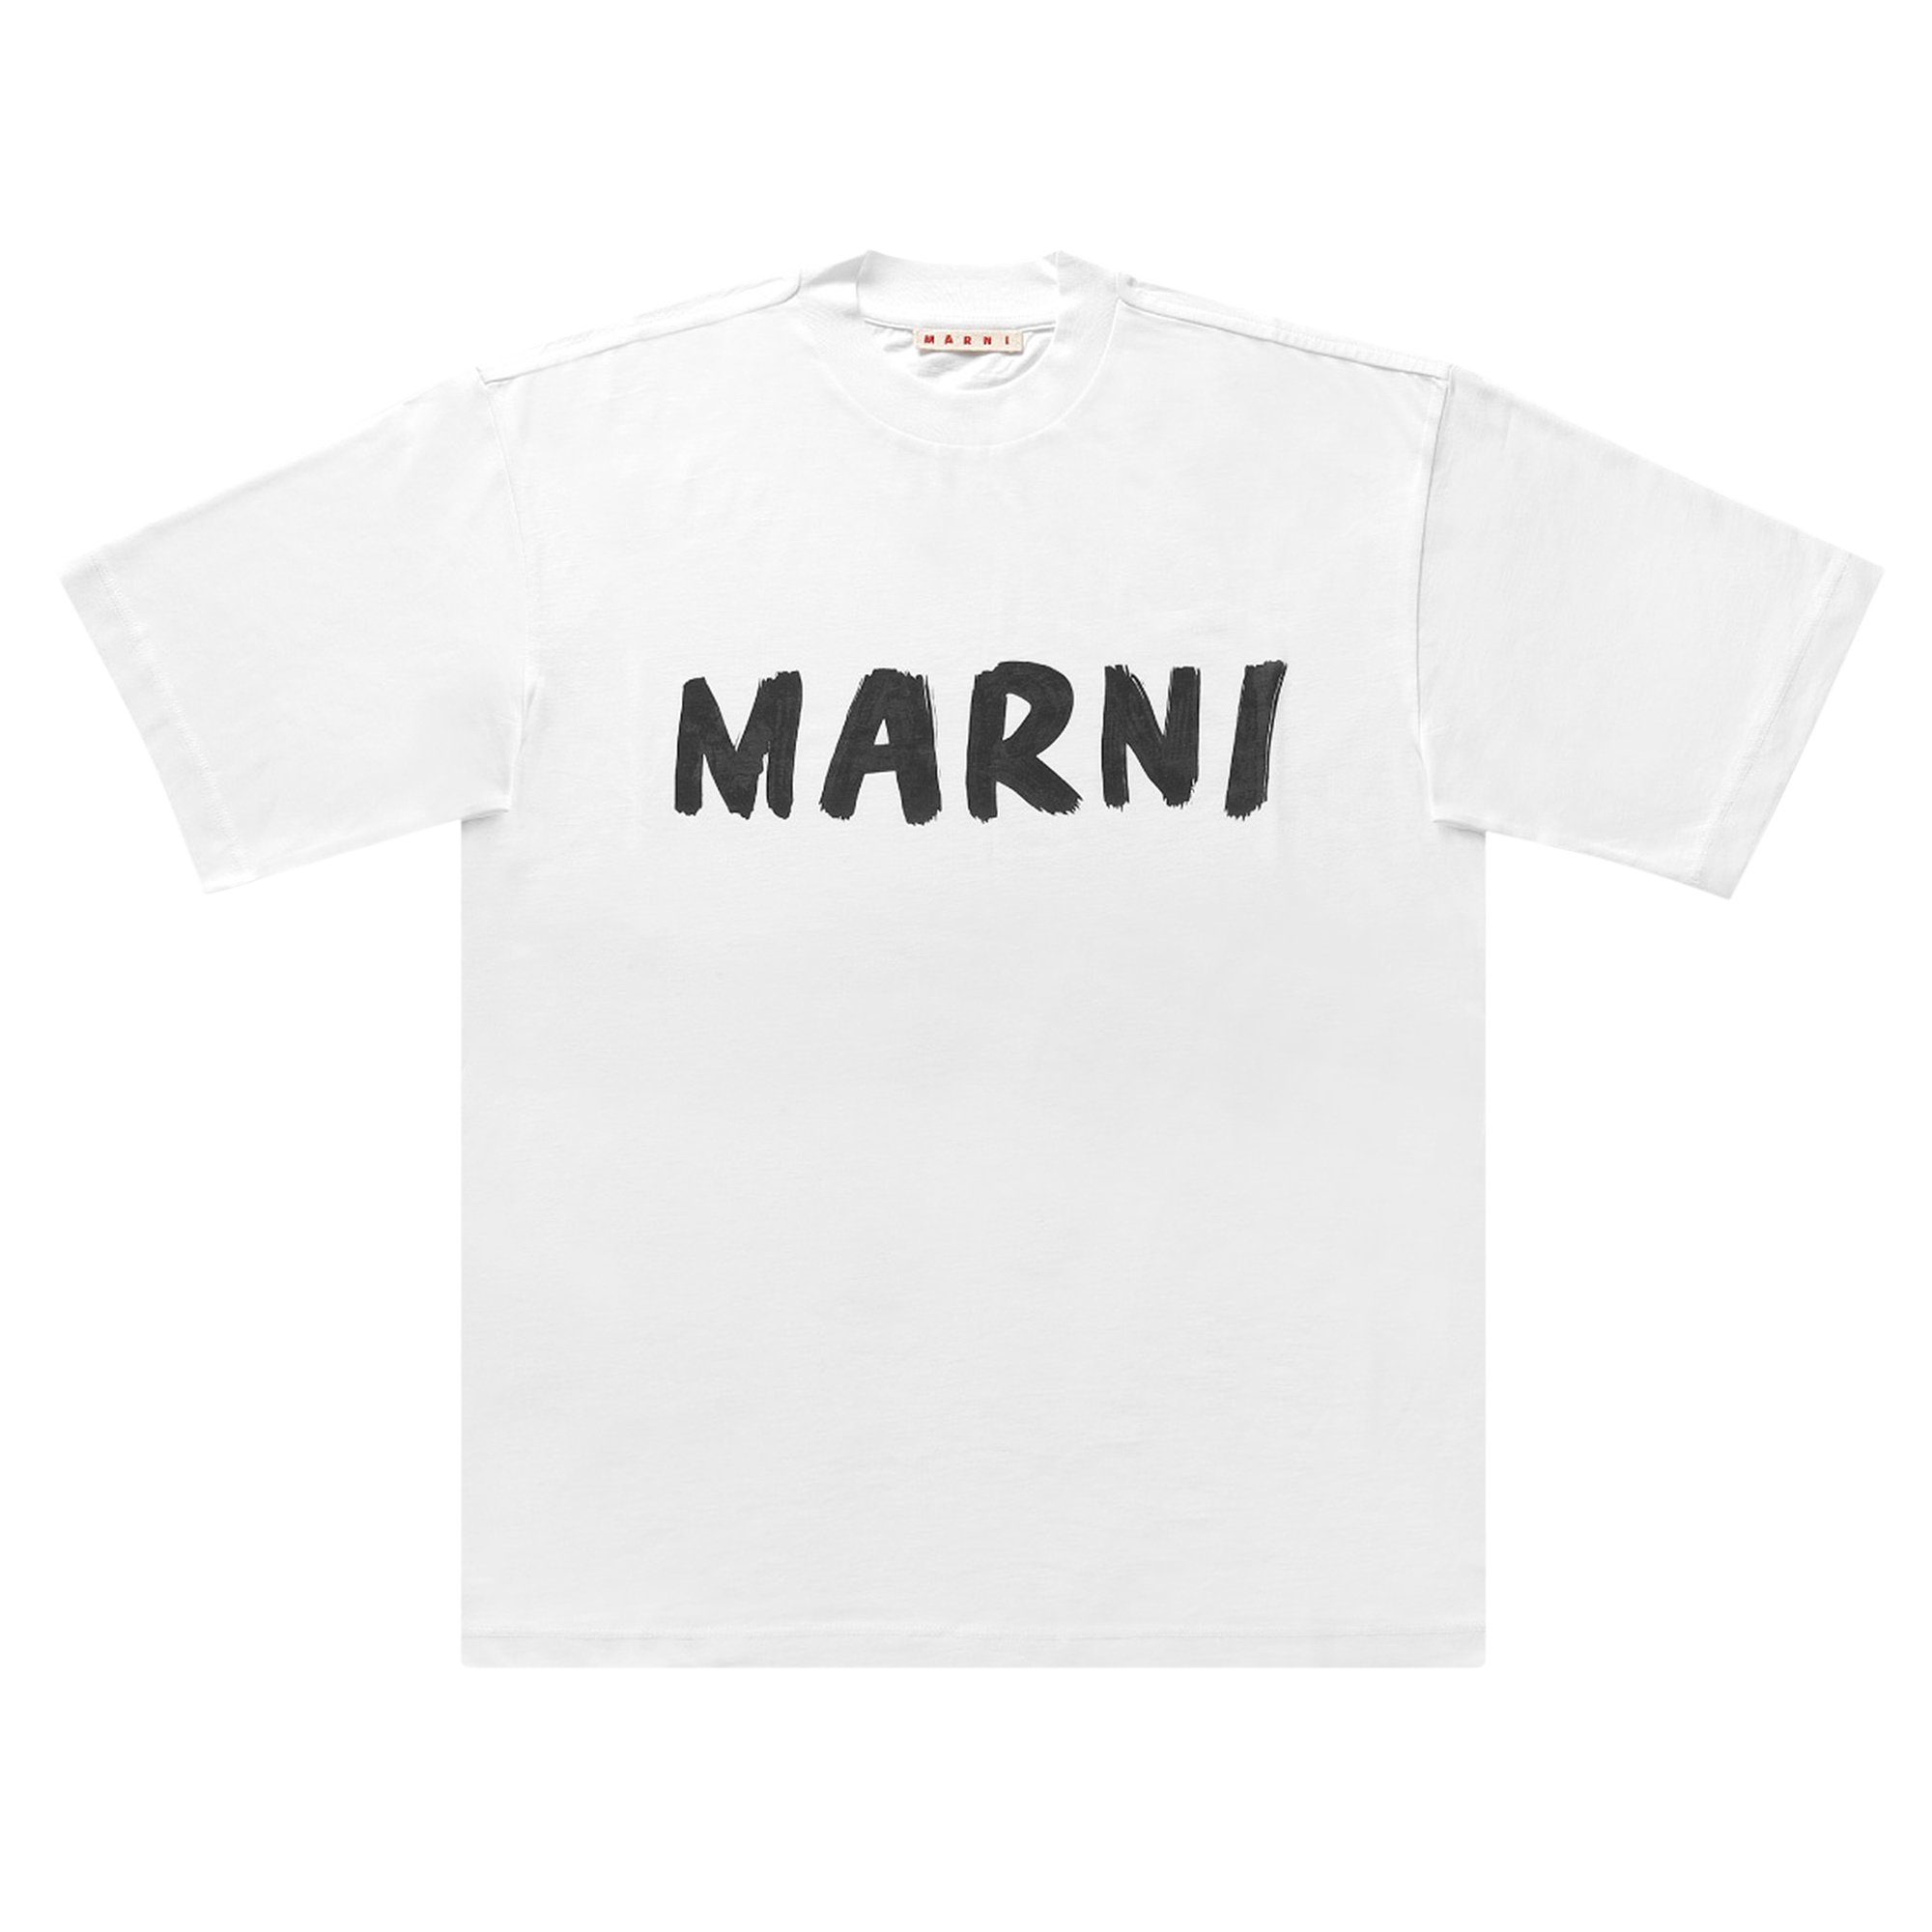 Marni Logo T-Shirt 'White' | GOAT